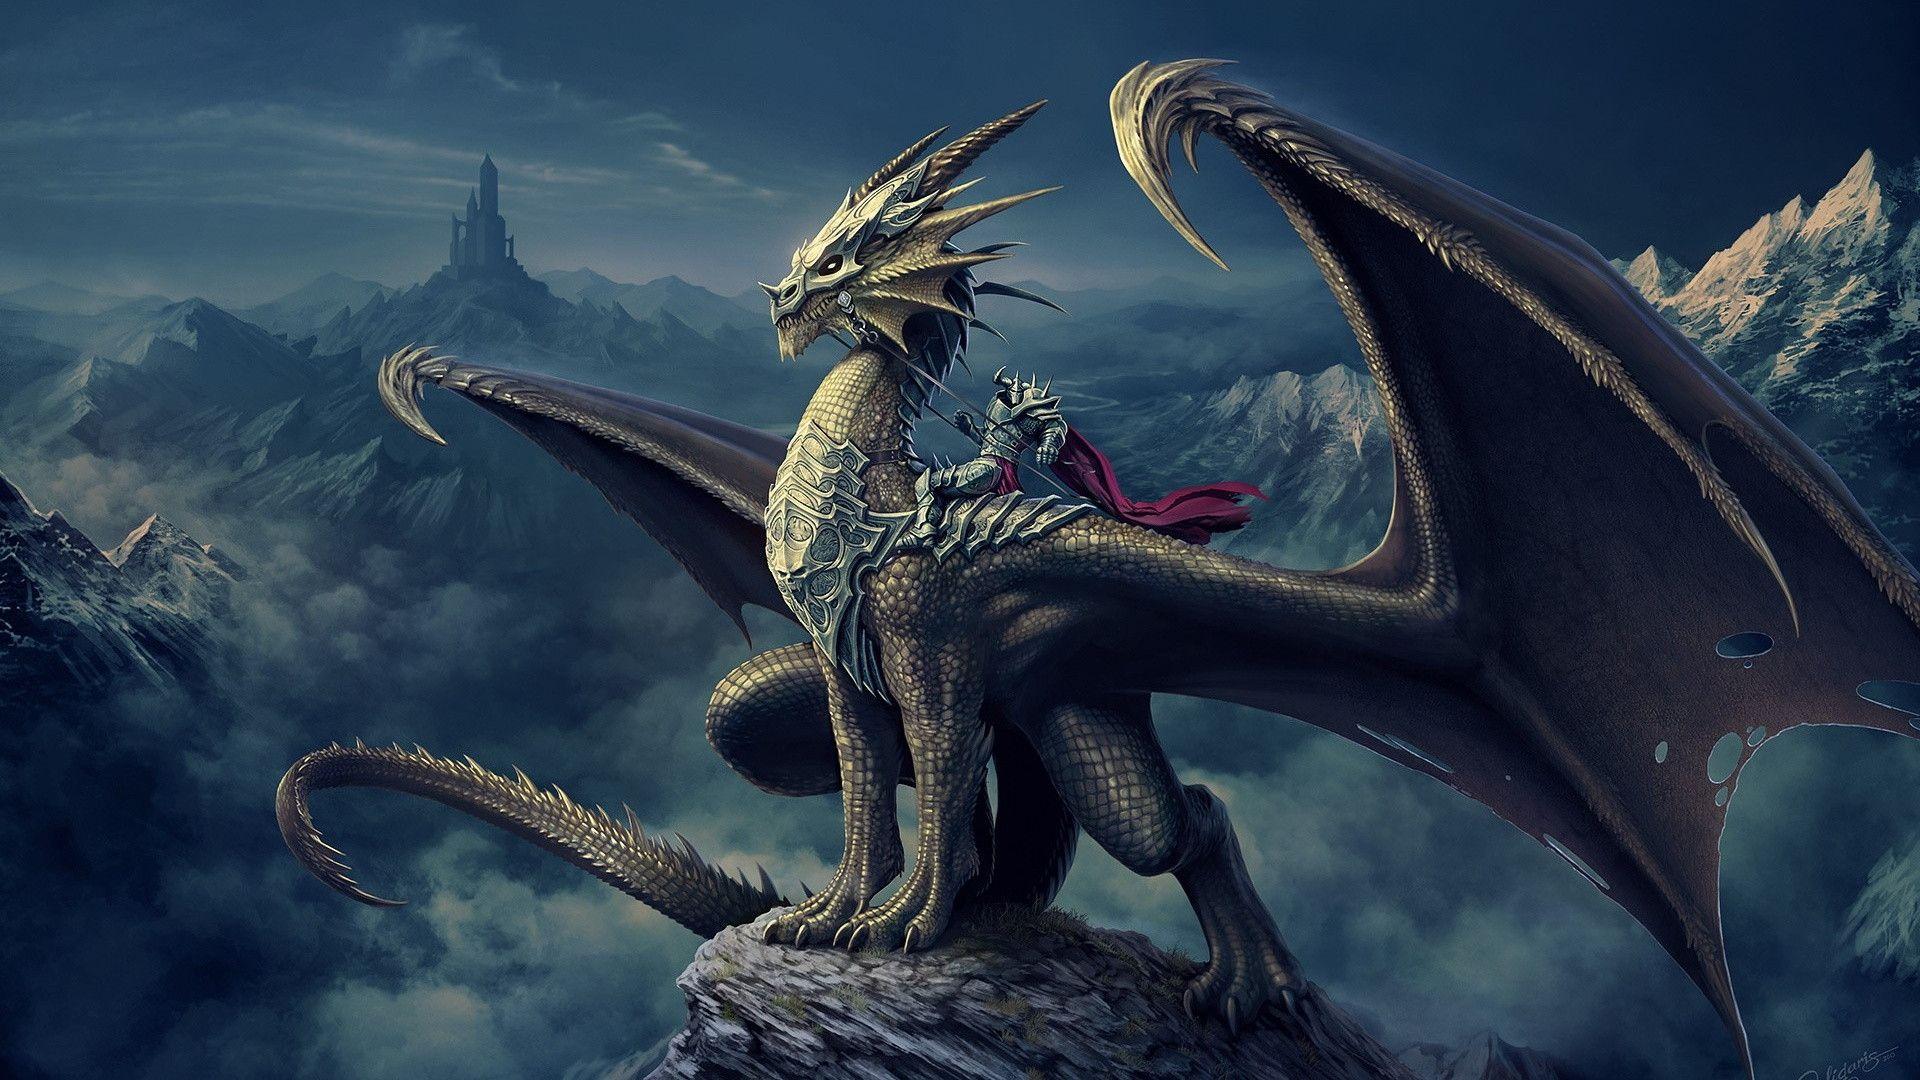 Dragon Wallpaper HD Download Free